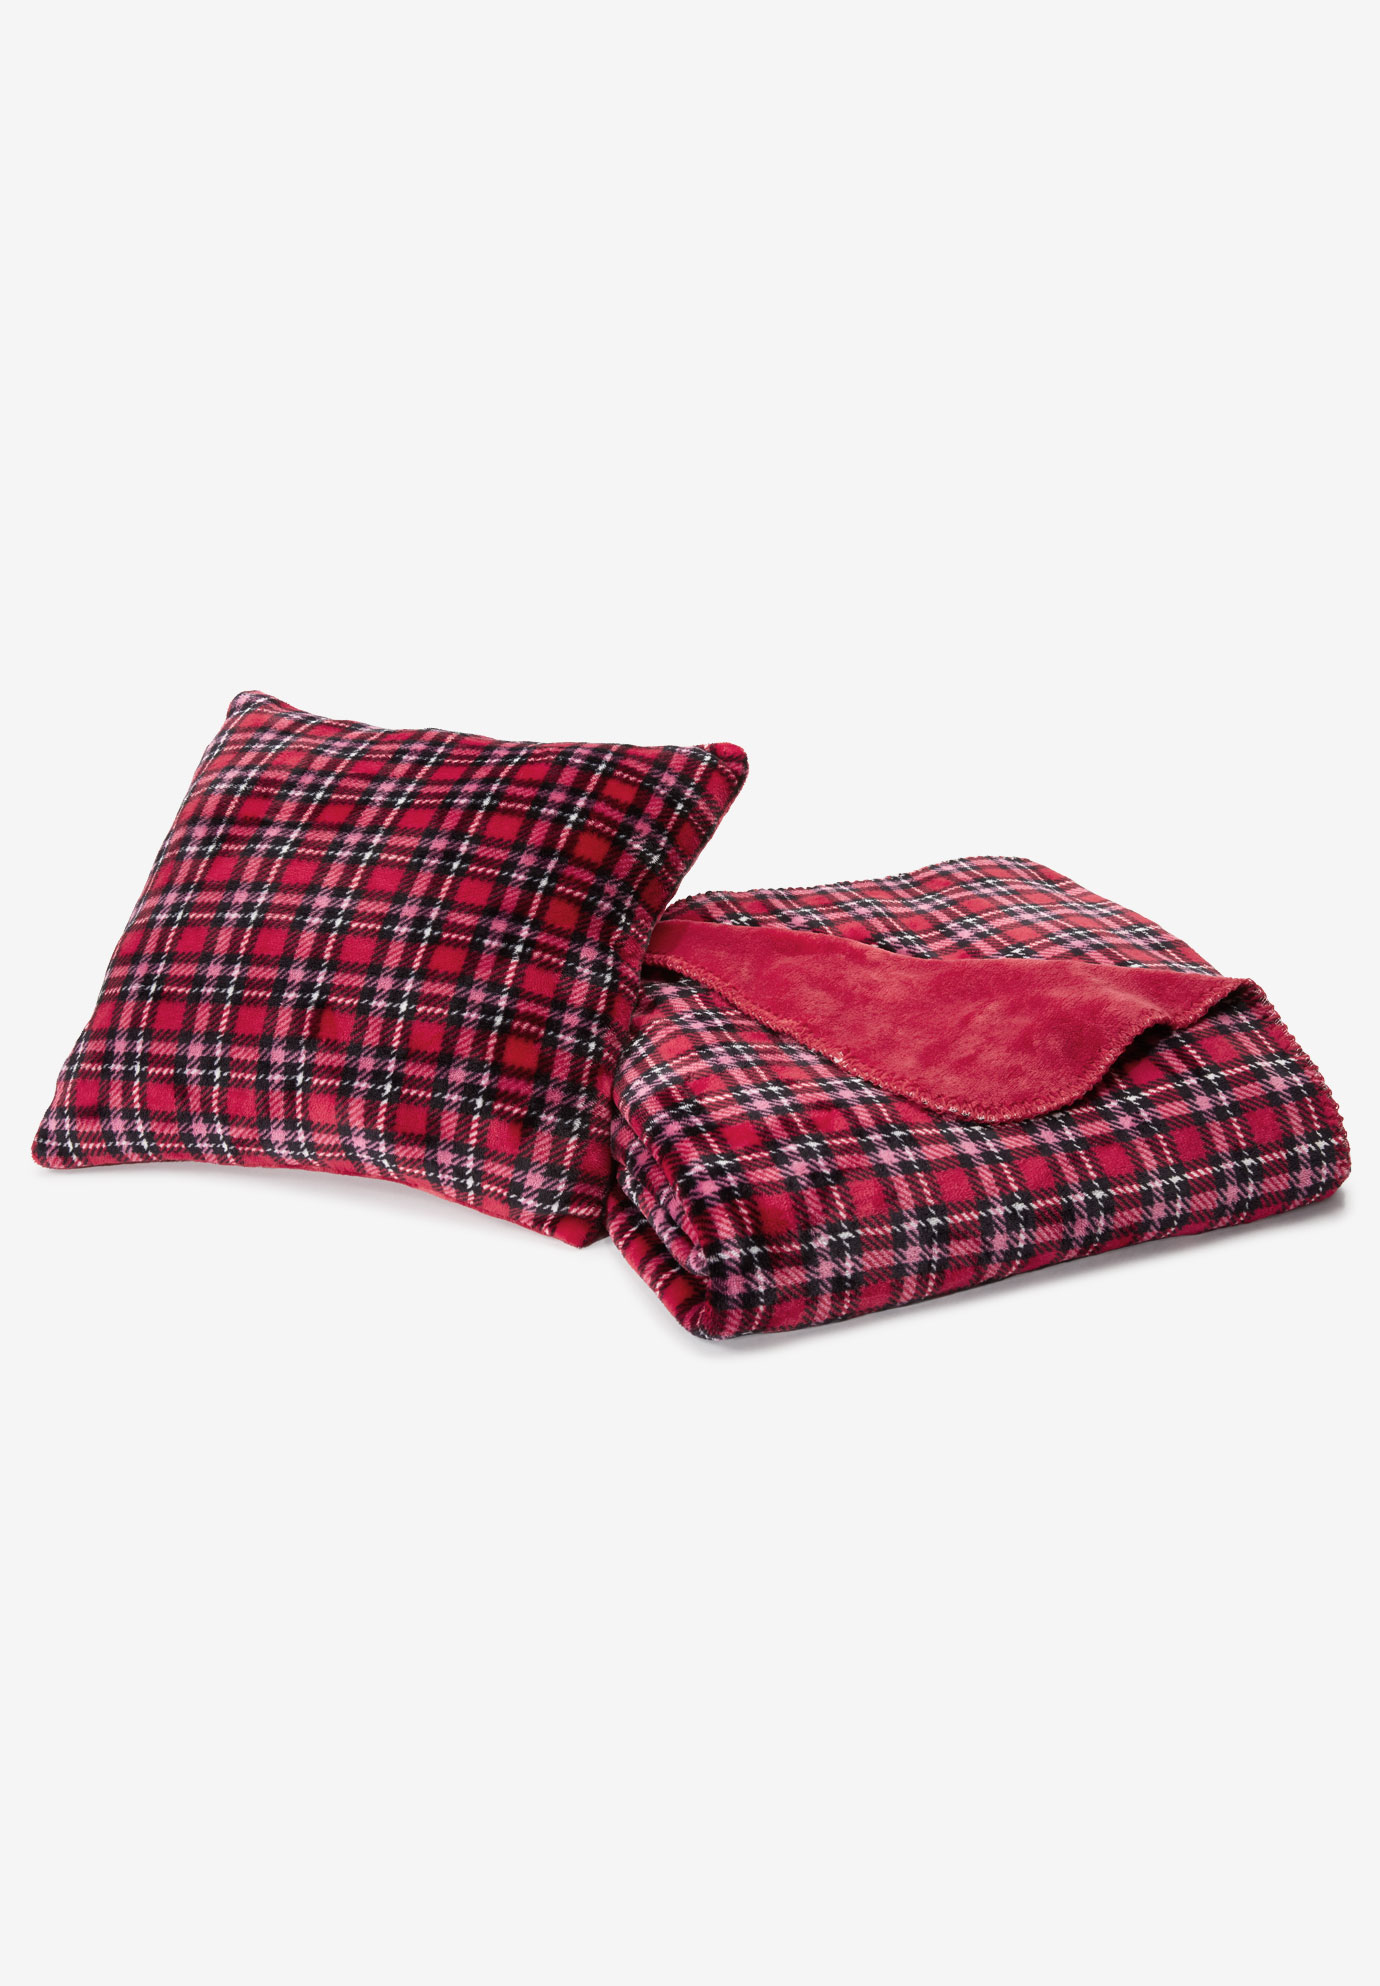 Plaid Fleece Pillow & Throw Set, CLASSIC RED PLAID